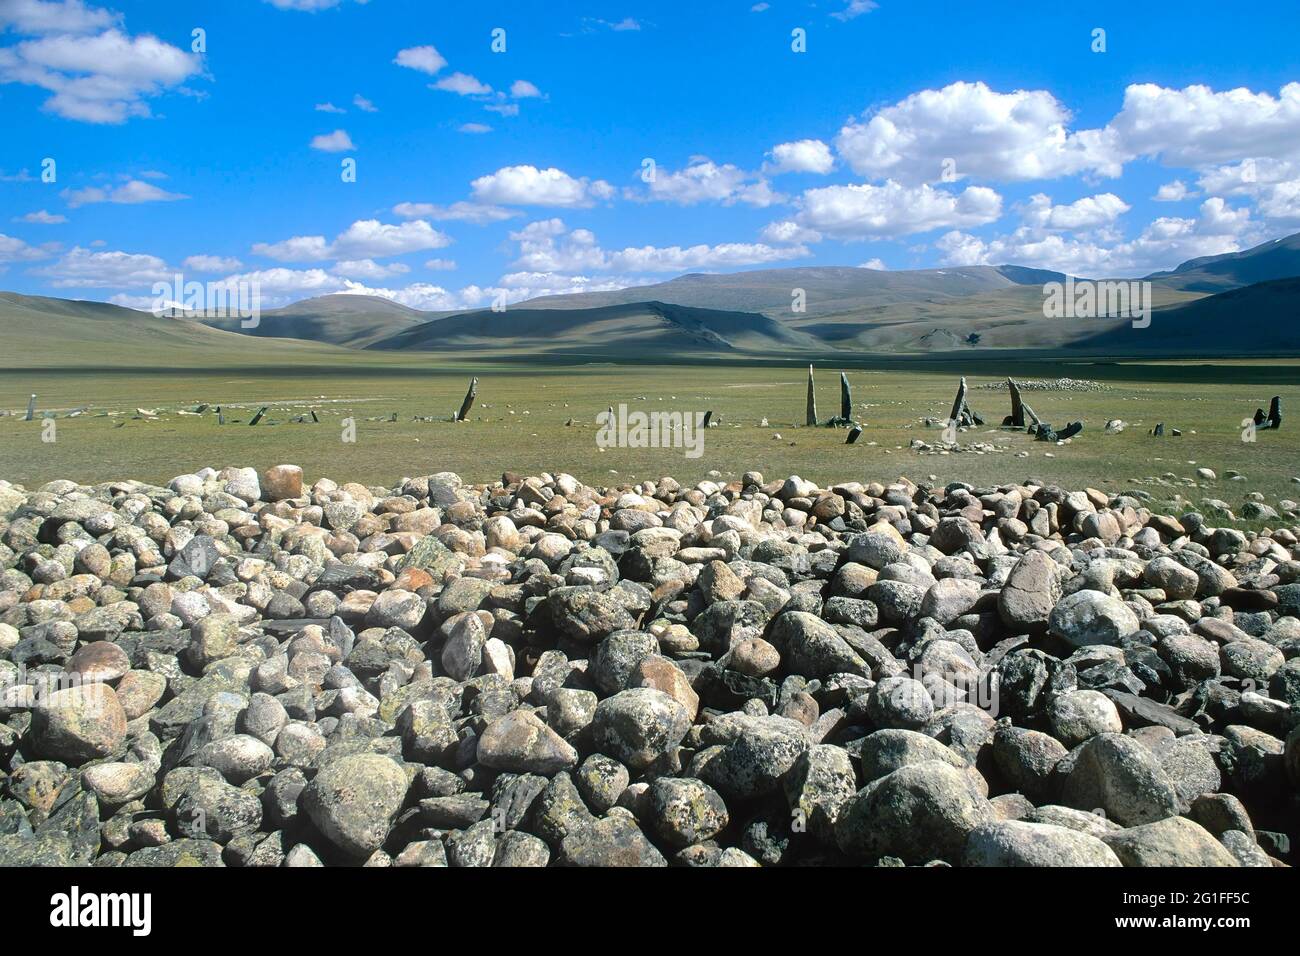 Stèles funéraires ou pierres de cerfs, site d'enfouissement préhistorique de la rivière Sagsai, montagnes Altai, province de Bayan-Olgii, Mongolie Banque D'Images